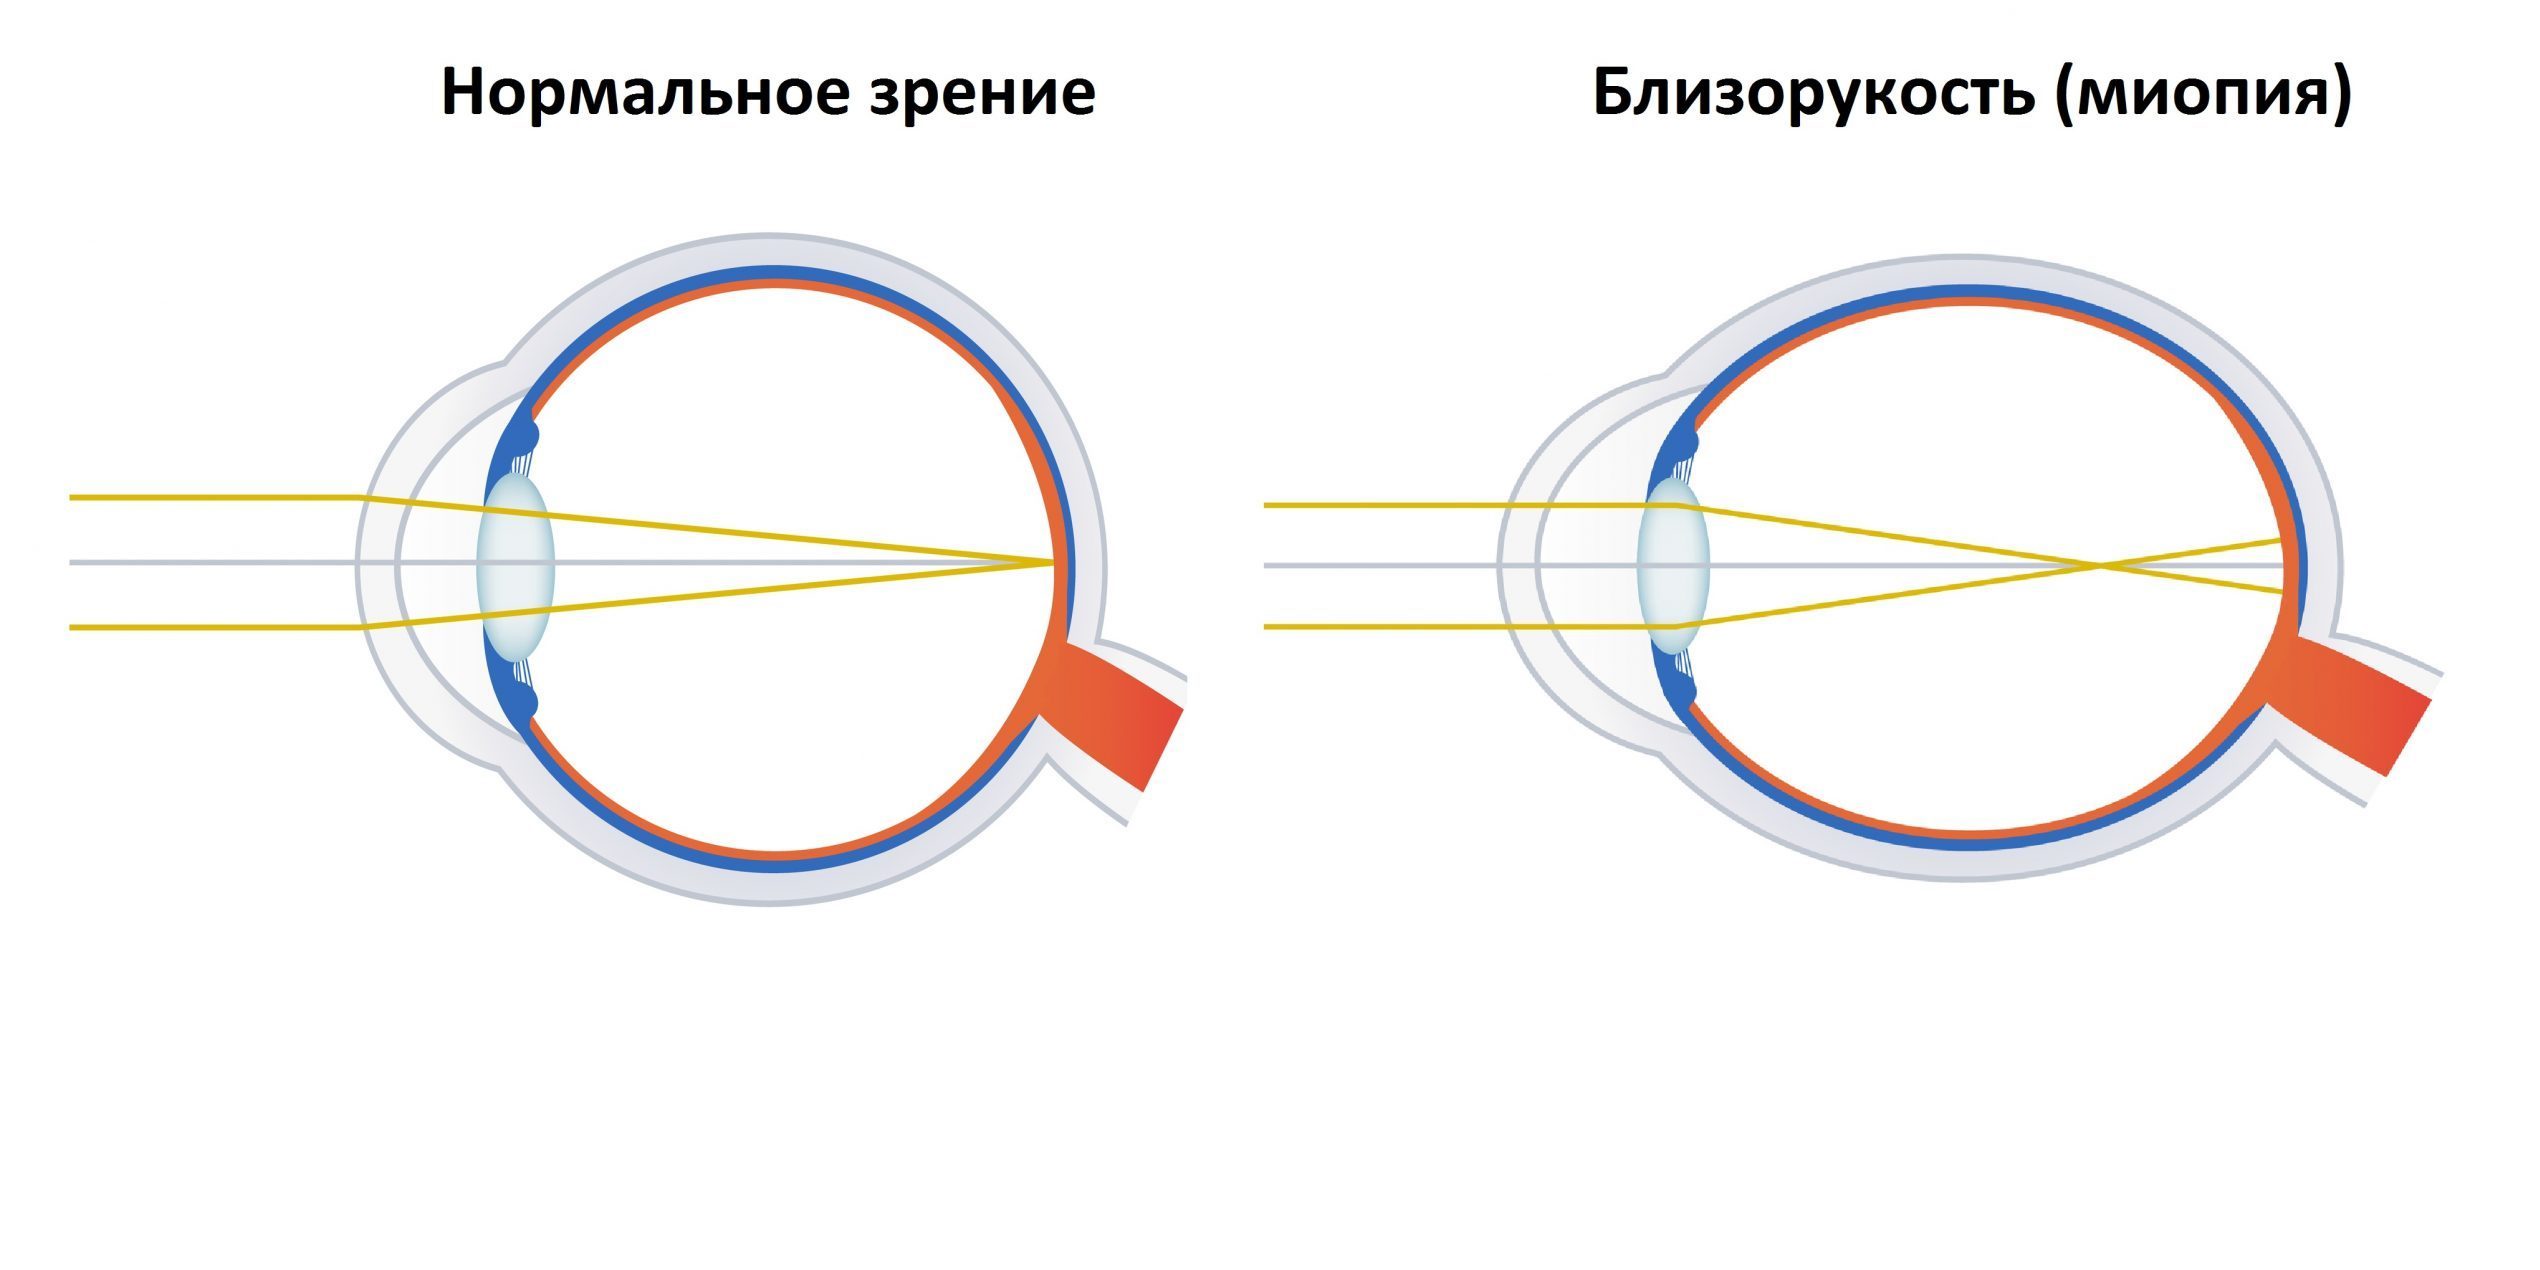 Лечение близорукости у детей: оптическая коррекция зрения |Zrenie